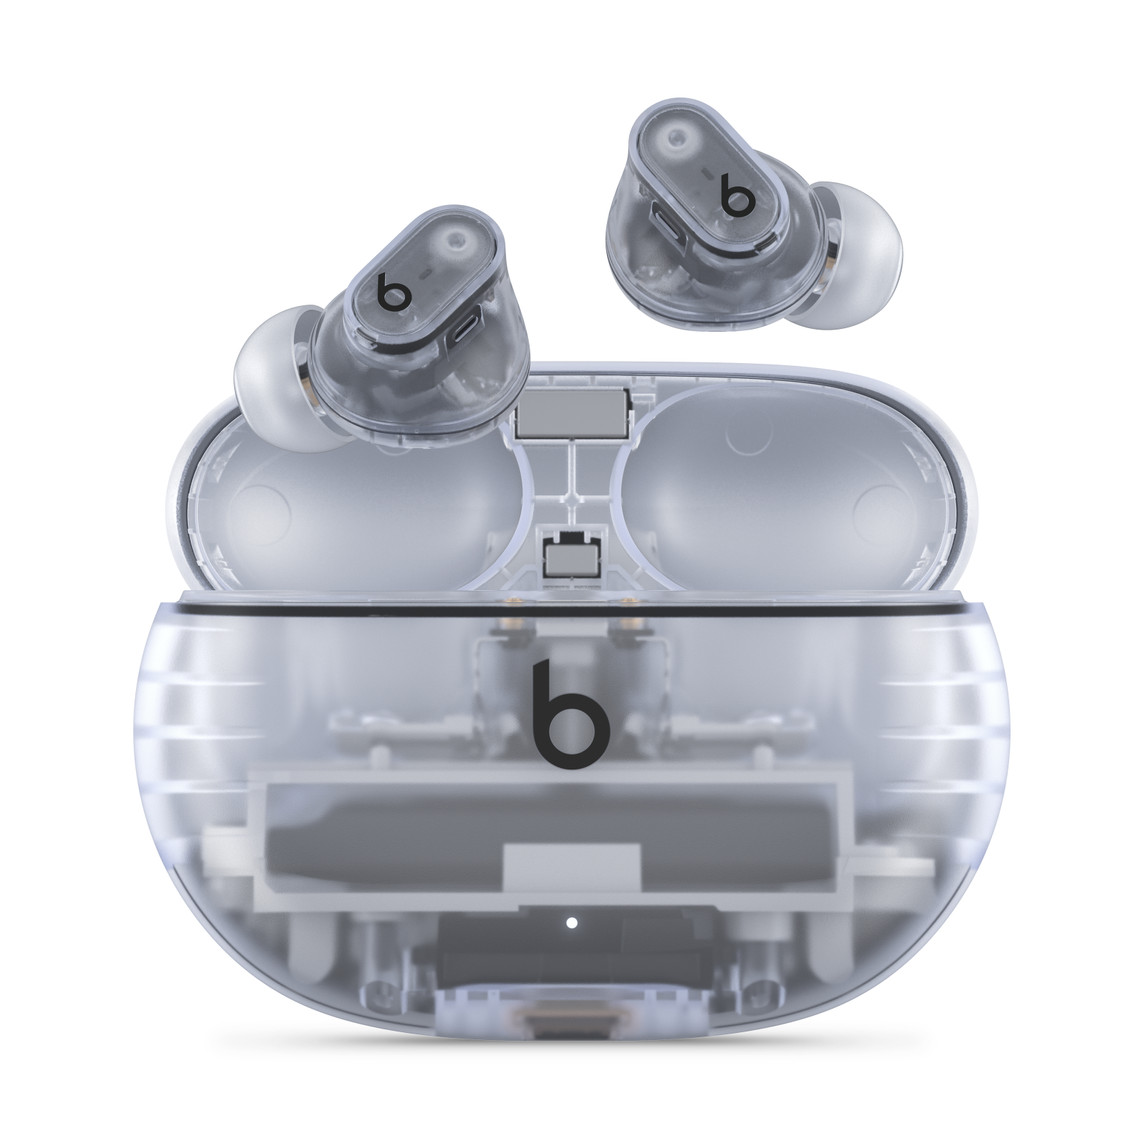 Auricolari true wireless con cancellazione del rumore Beats Studio Buds + nella versione trasparente con il logo Beats, posizionati sopra alla loro pratica custodia di ricarica.